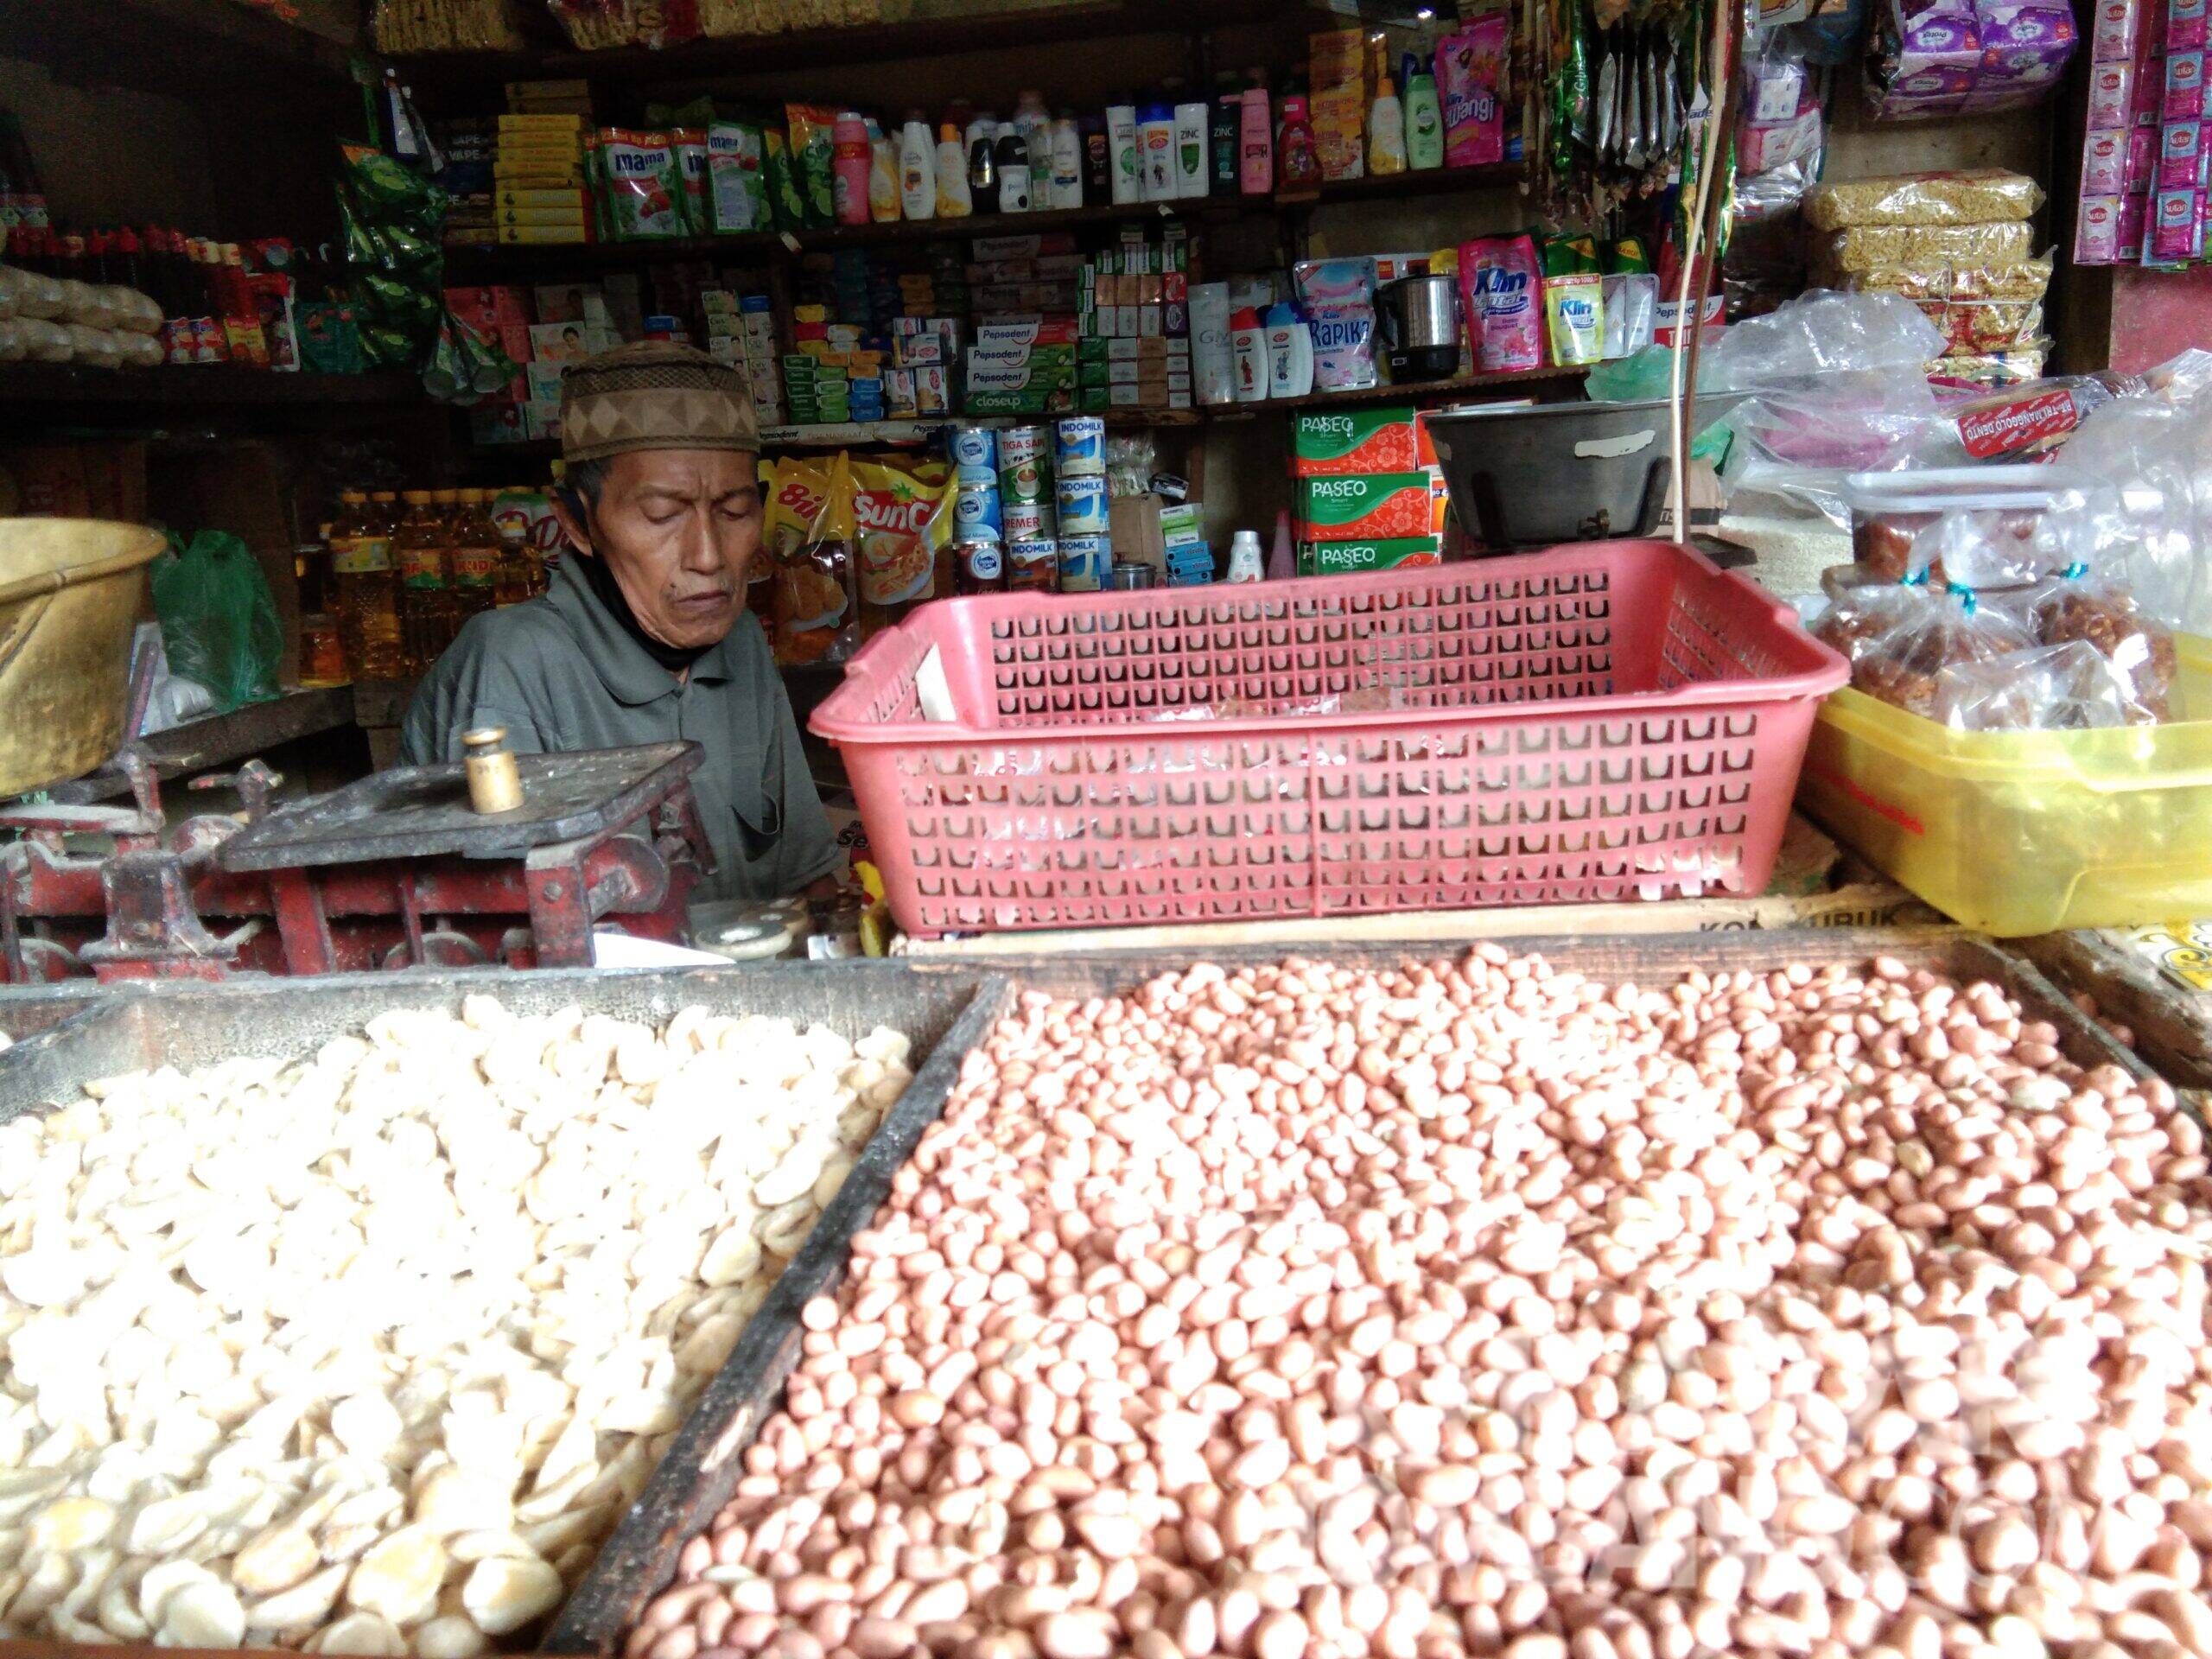 Penjual sembako di Pasar Peterongan, Kabupaten Jombang, Kamis (4/2/2021).